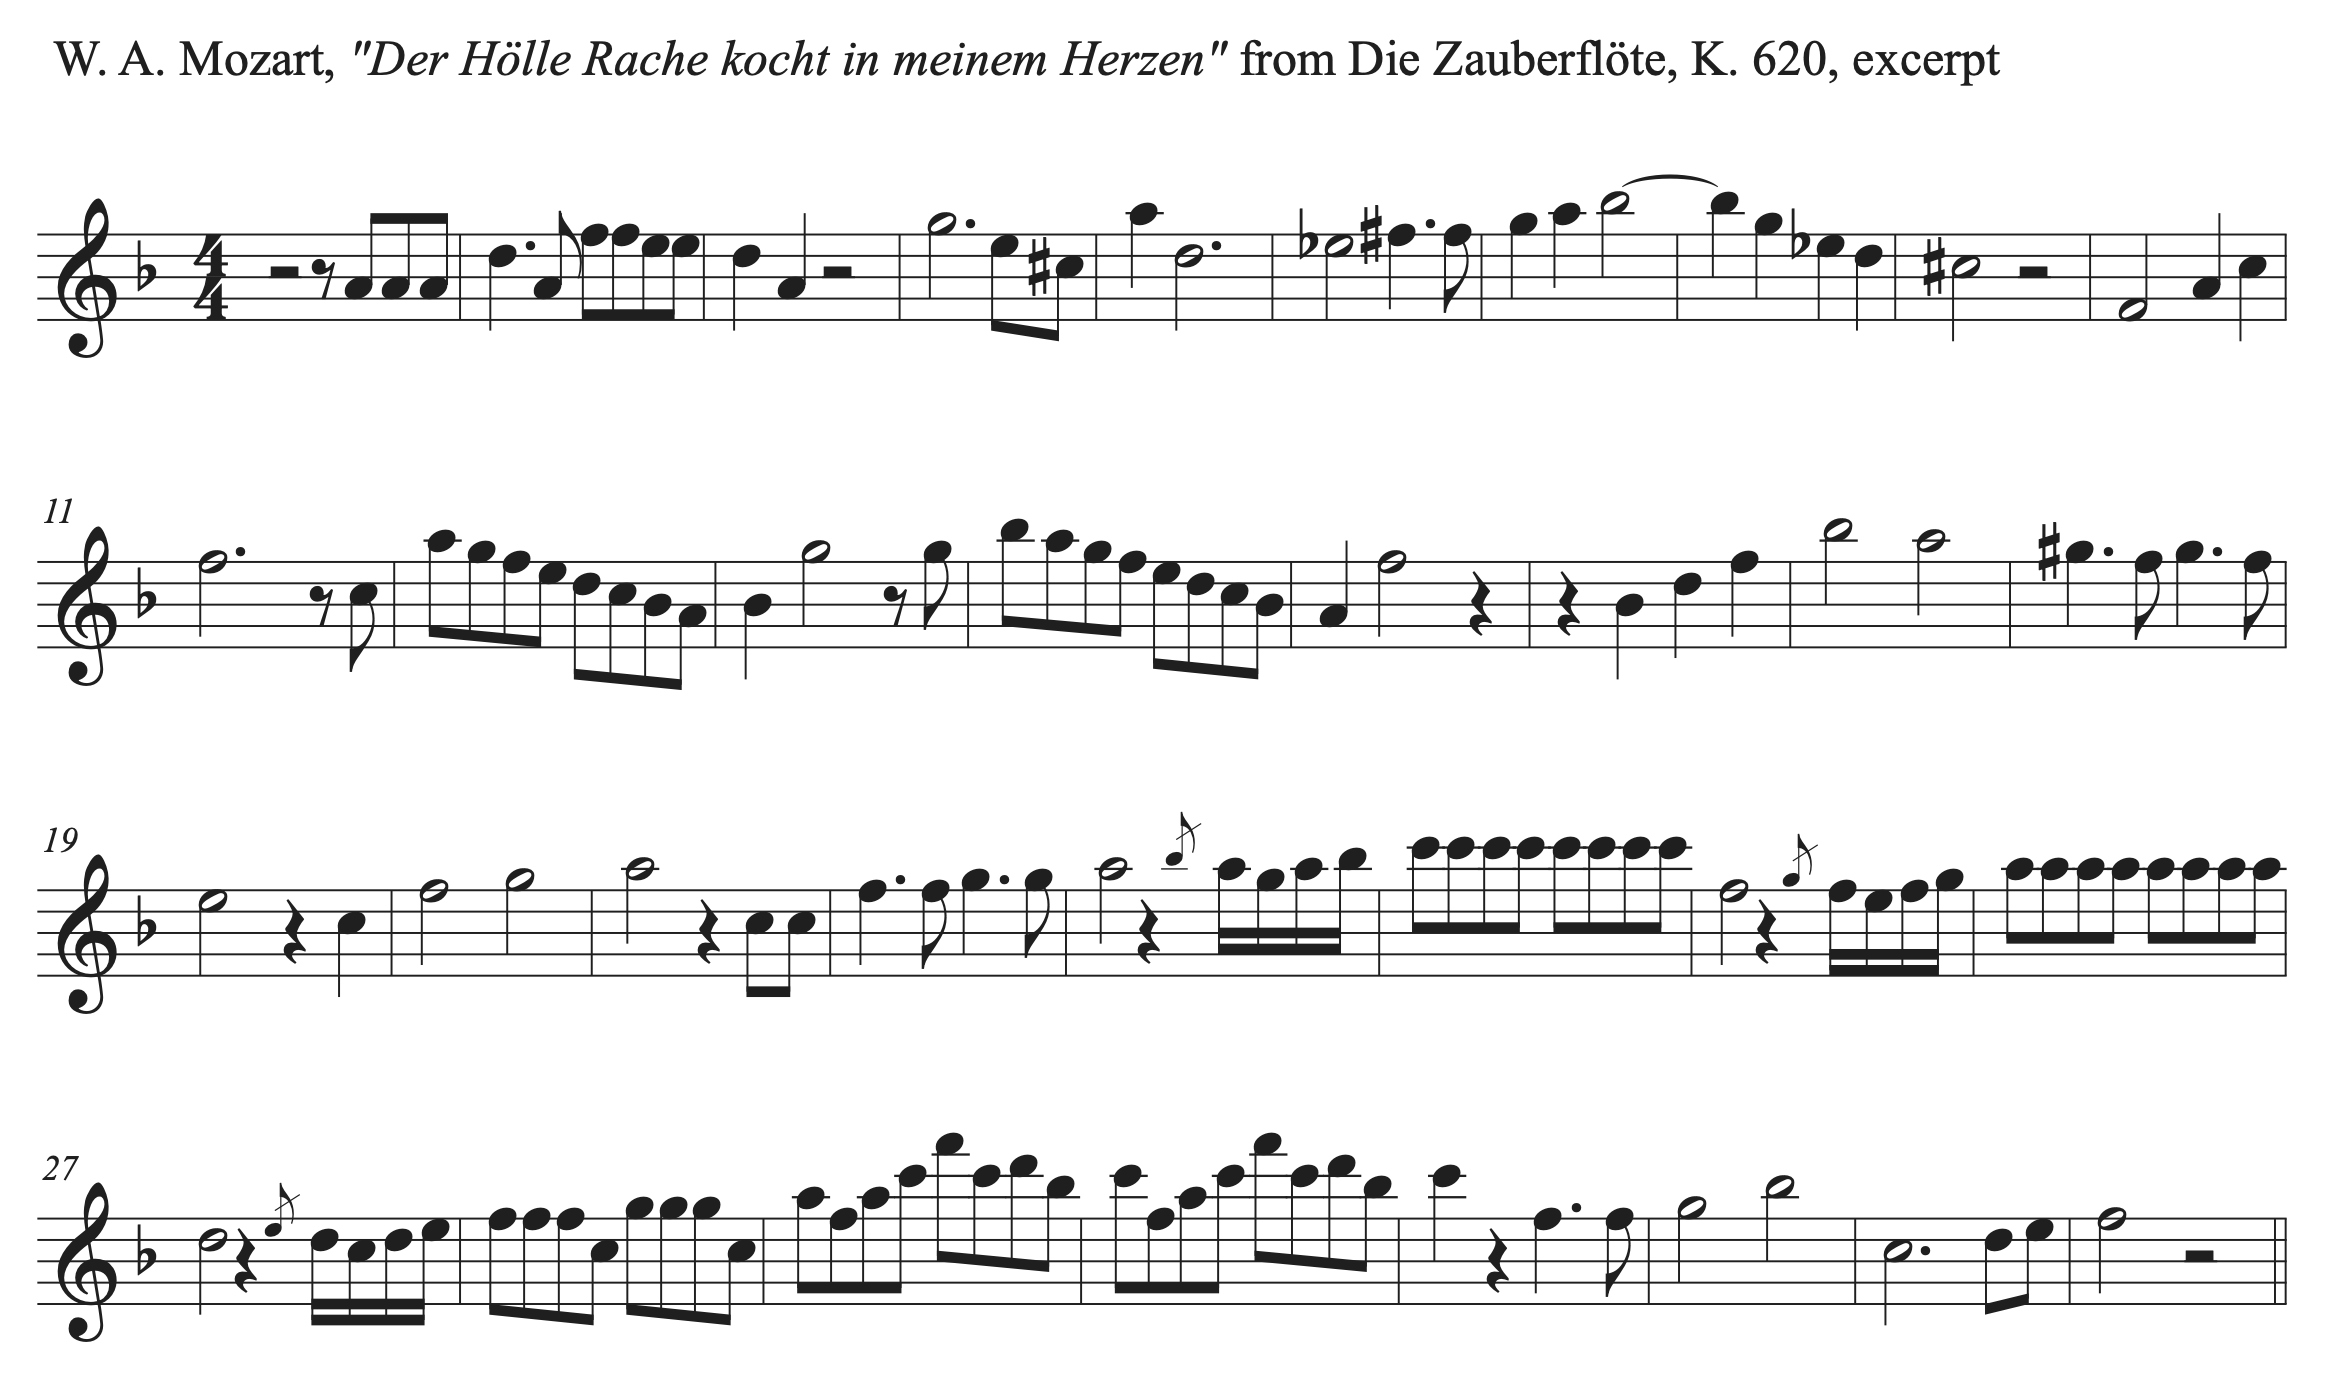 Excerpt from Mozart's Der Holle Rache kocht in meinem Herzen from Die Zauberflote, K. 620.